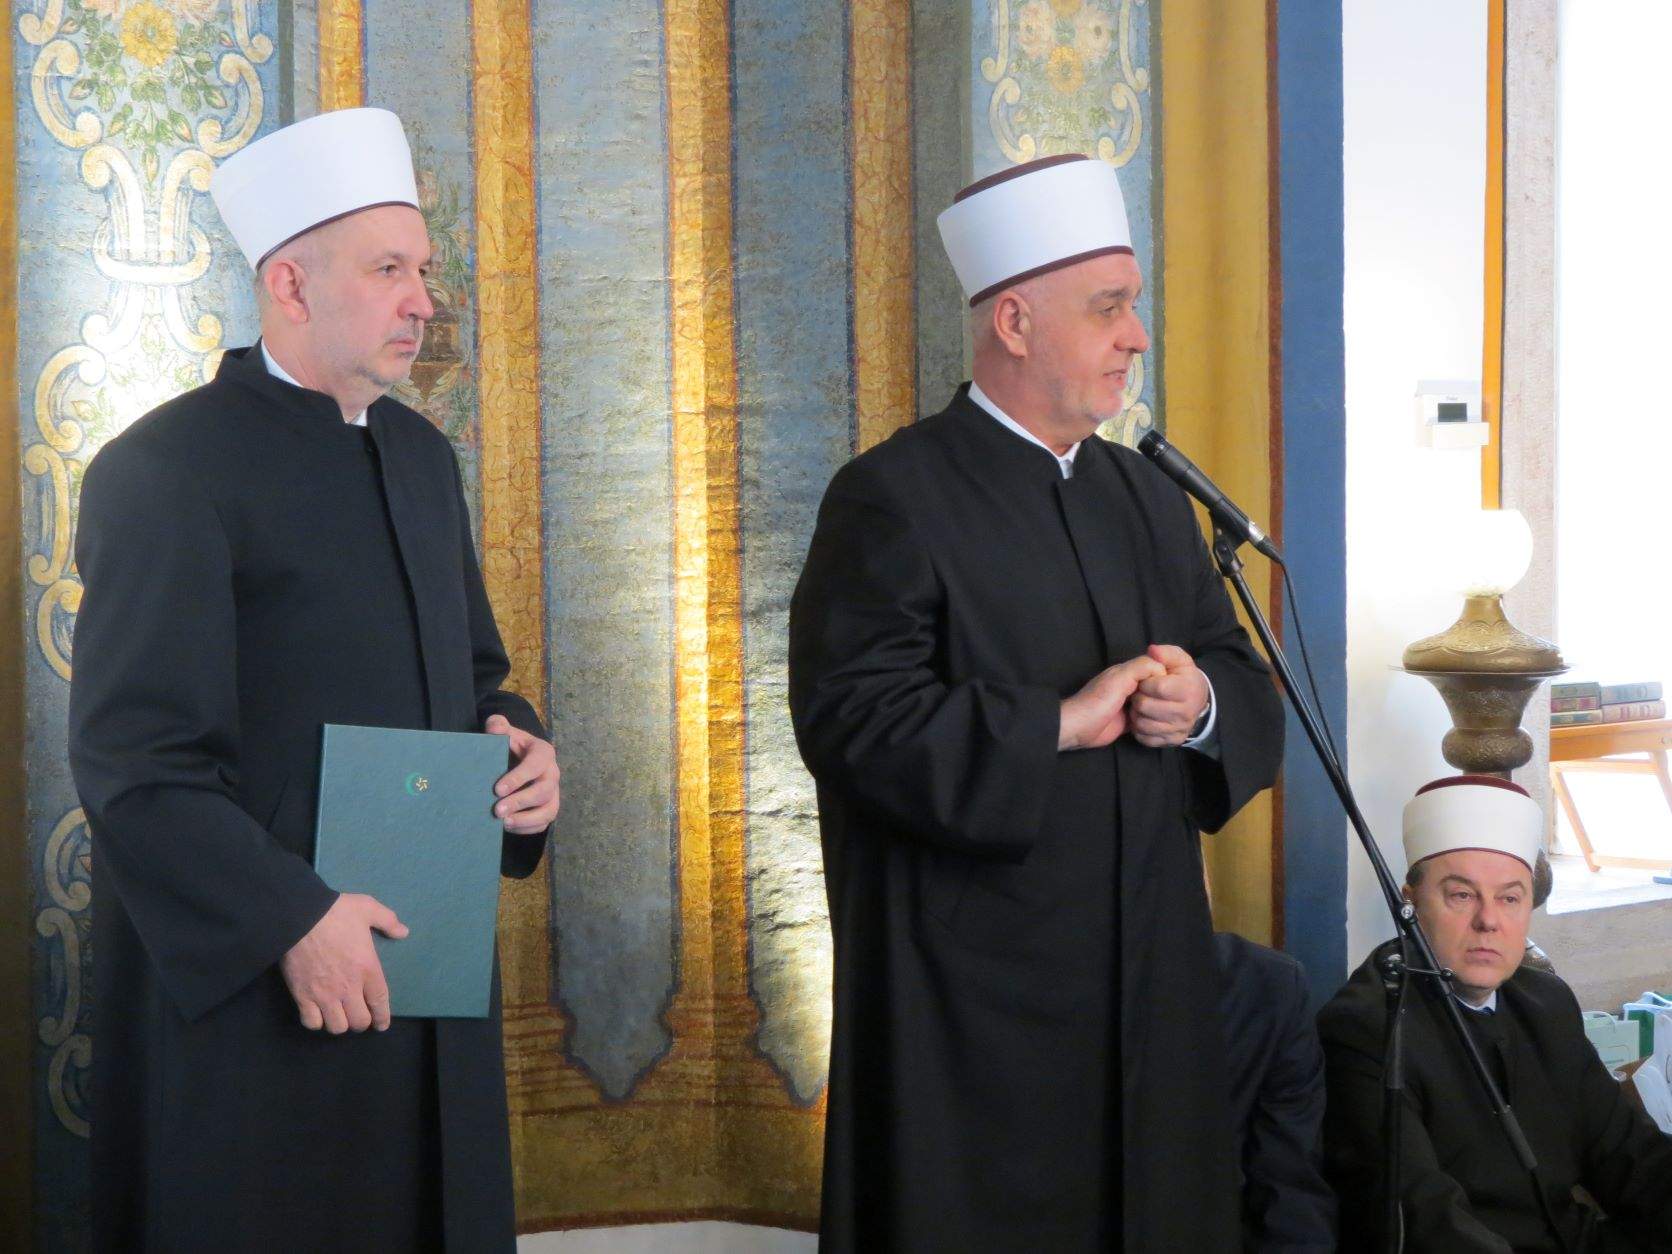 Muftijstvo sarajevsko i World Vision potpisali Protokol o saradnji